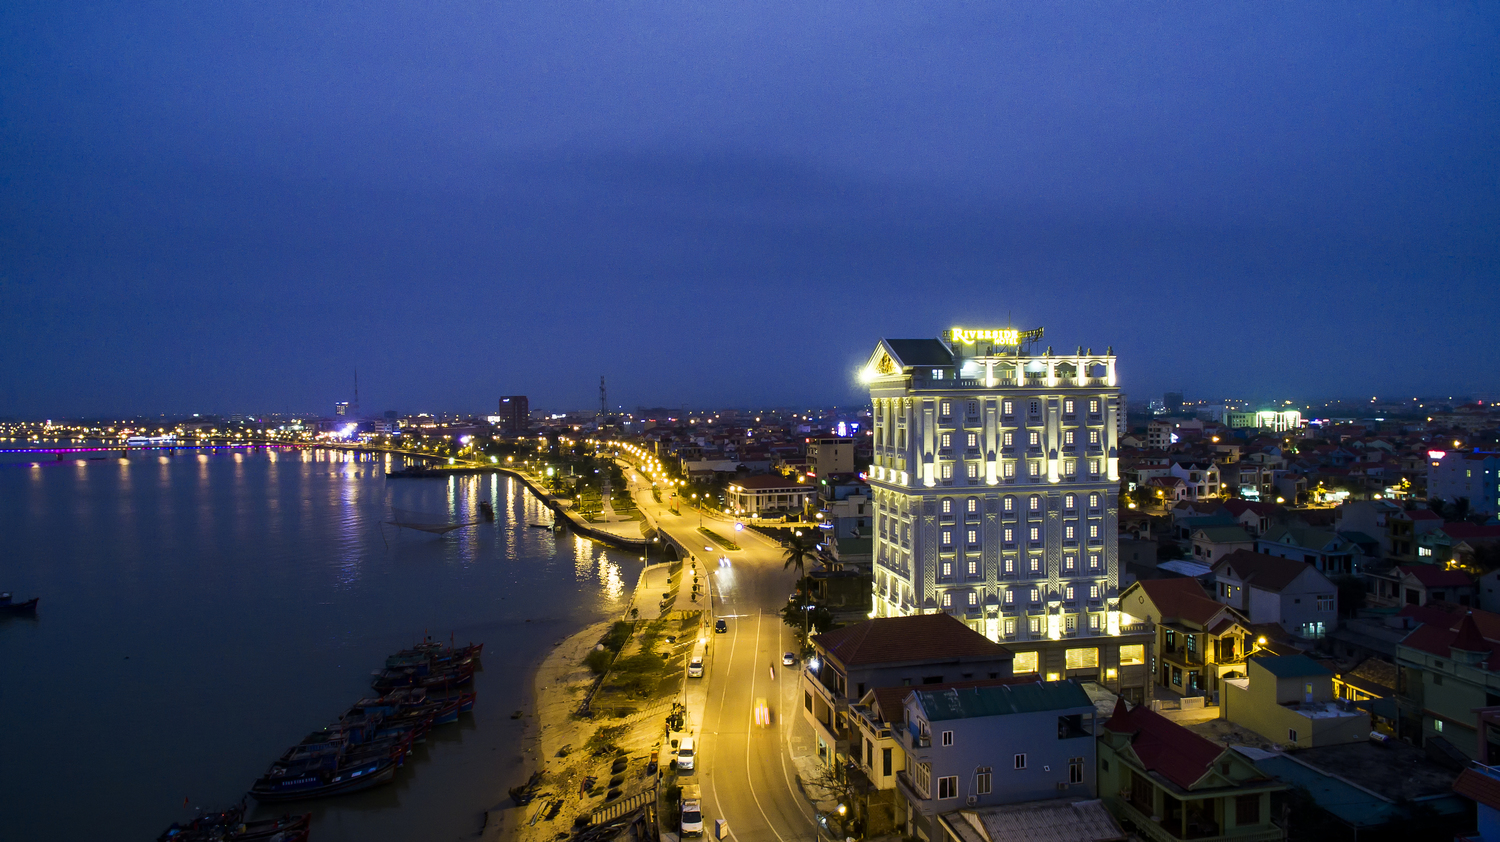 Tổng hợp hình ảnh Nha Trang đẹp nhất – Thành phố biển hấp dẫn khách du lịch - [Kích thước hình ảnh: 1500x842 px]